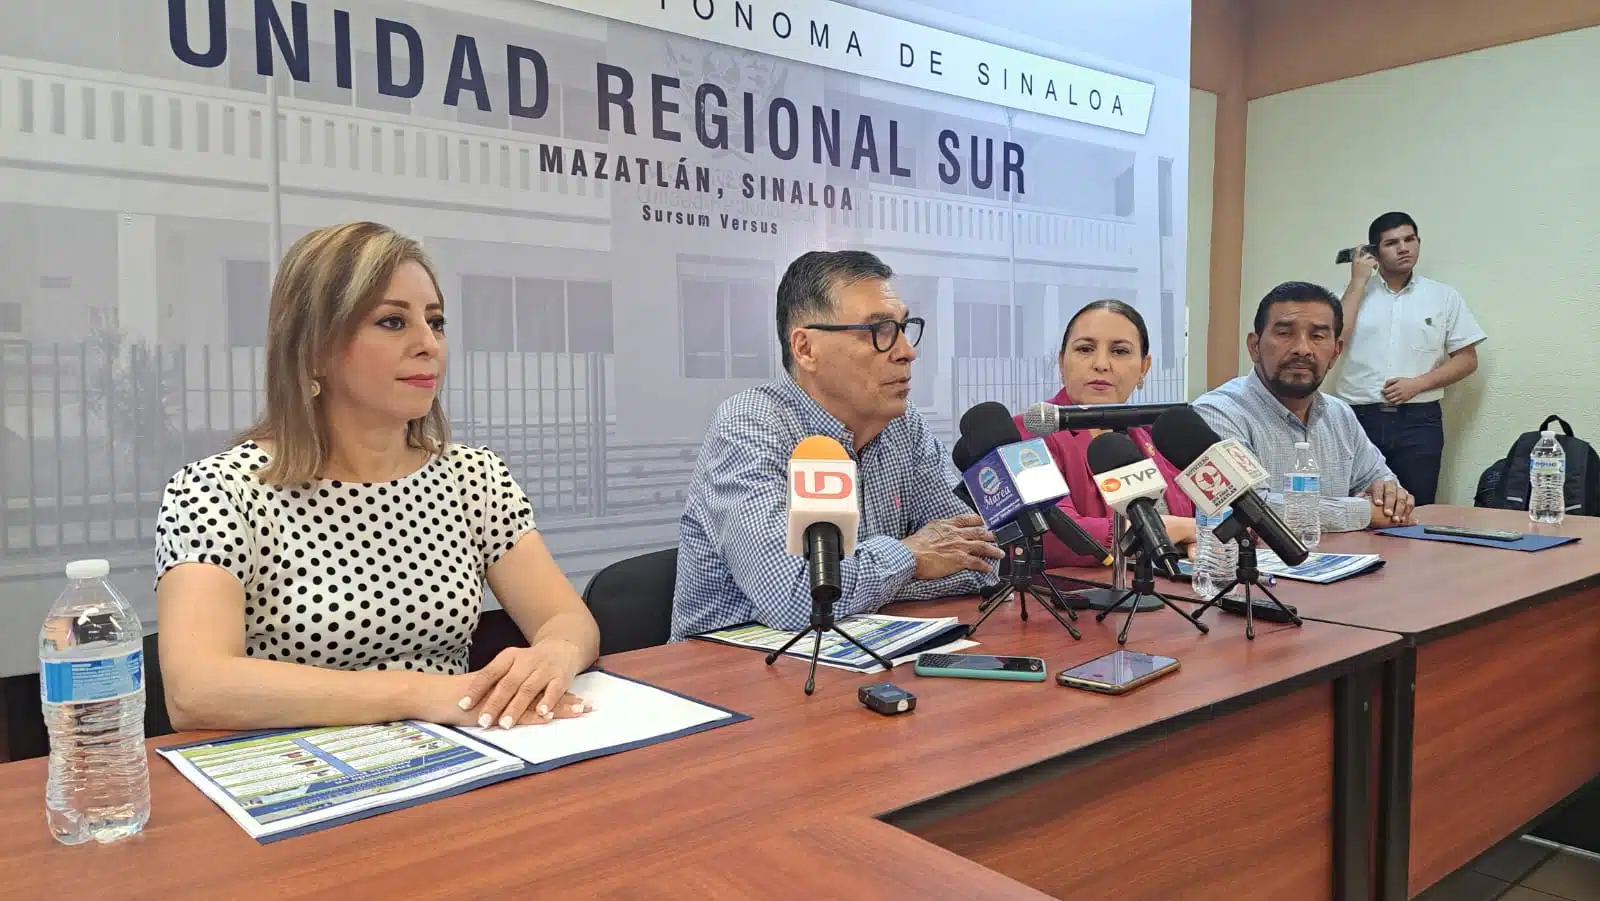 La Facultad de Ciencias Sociales de la UAS invita a diplomado de Análisis Político en Mazatlán